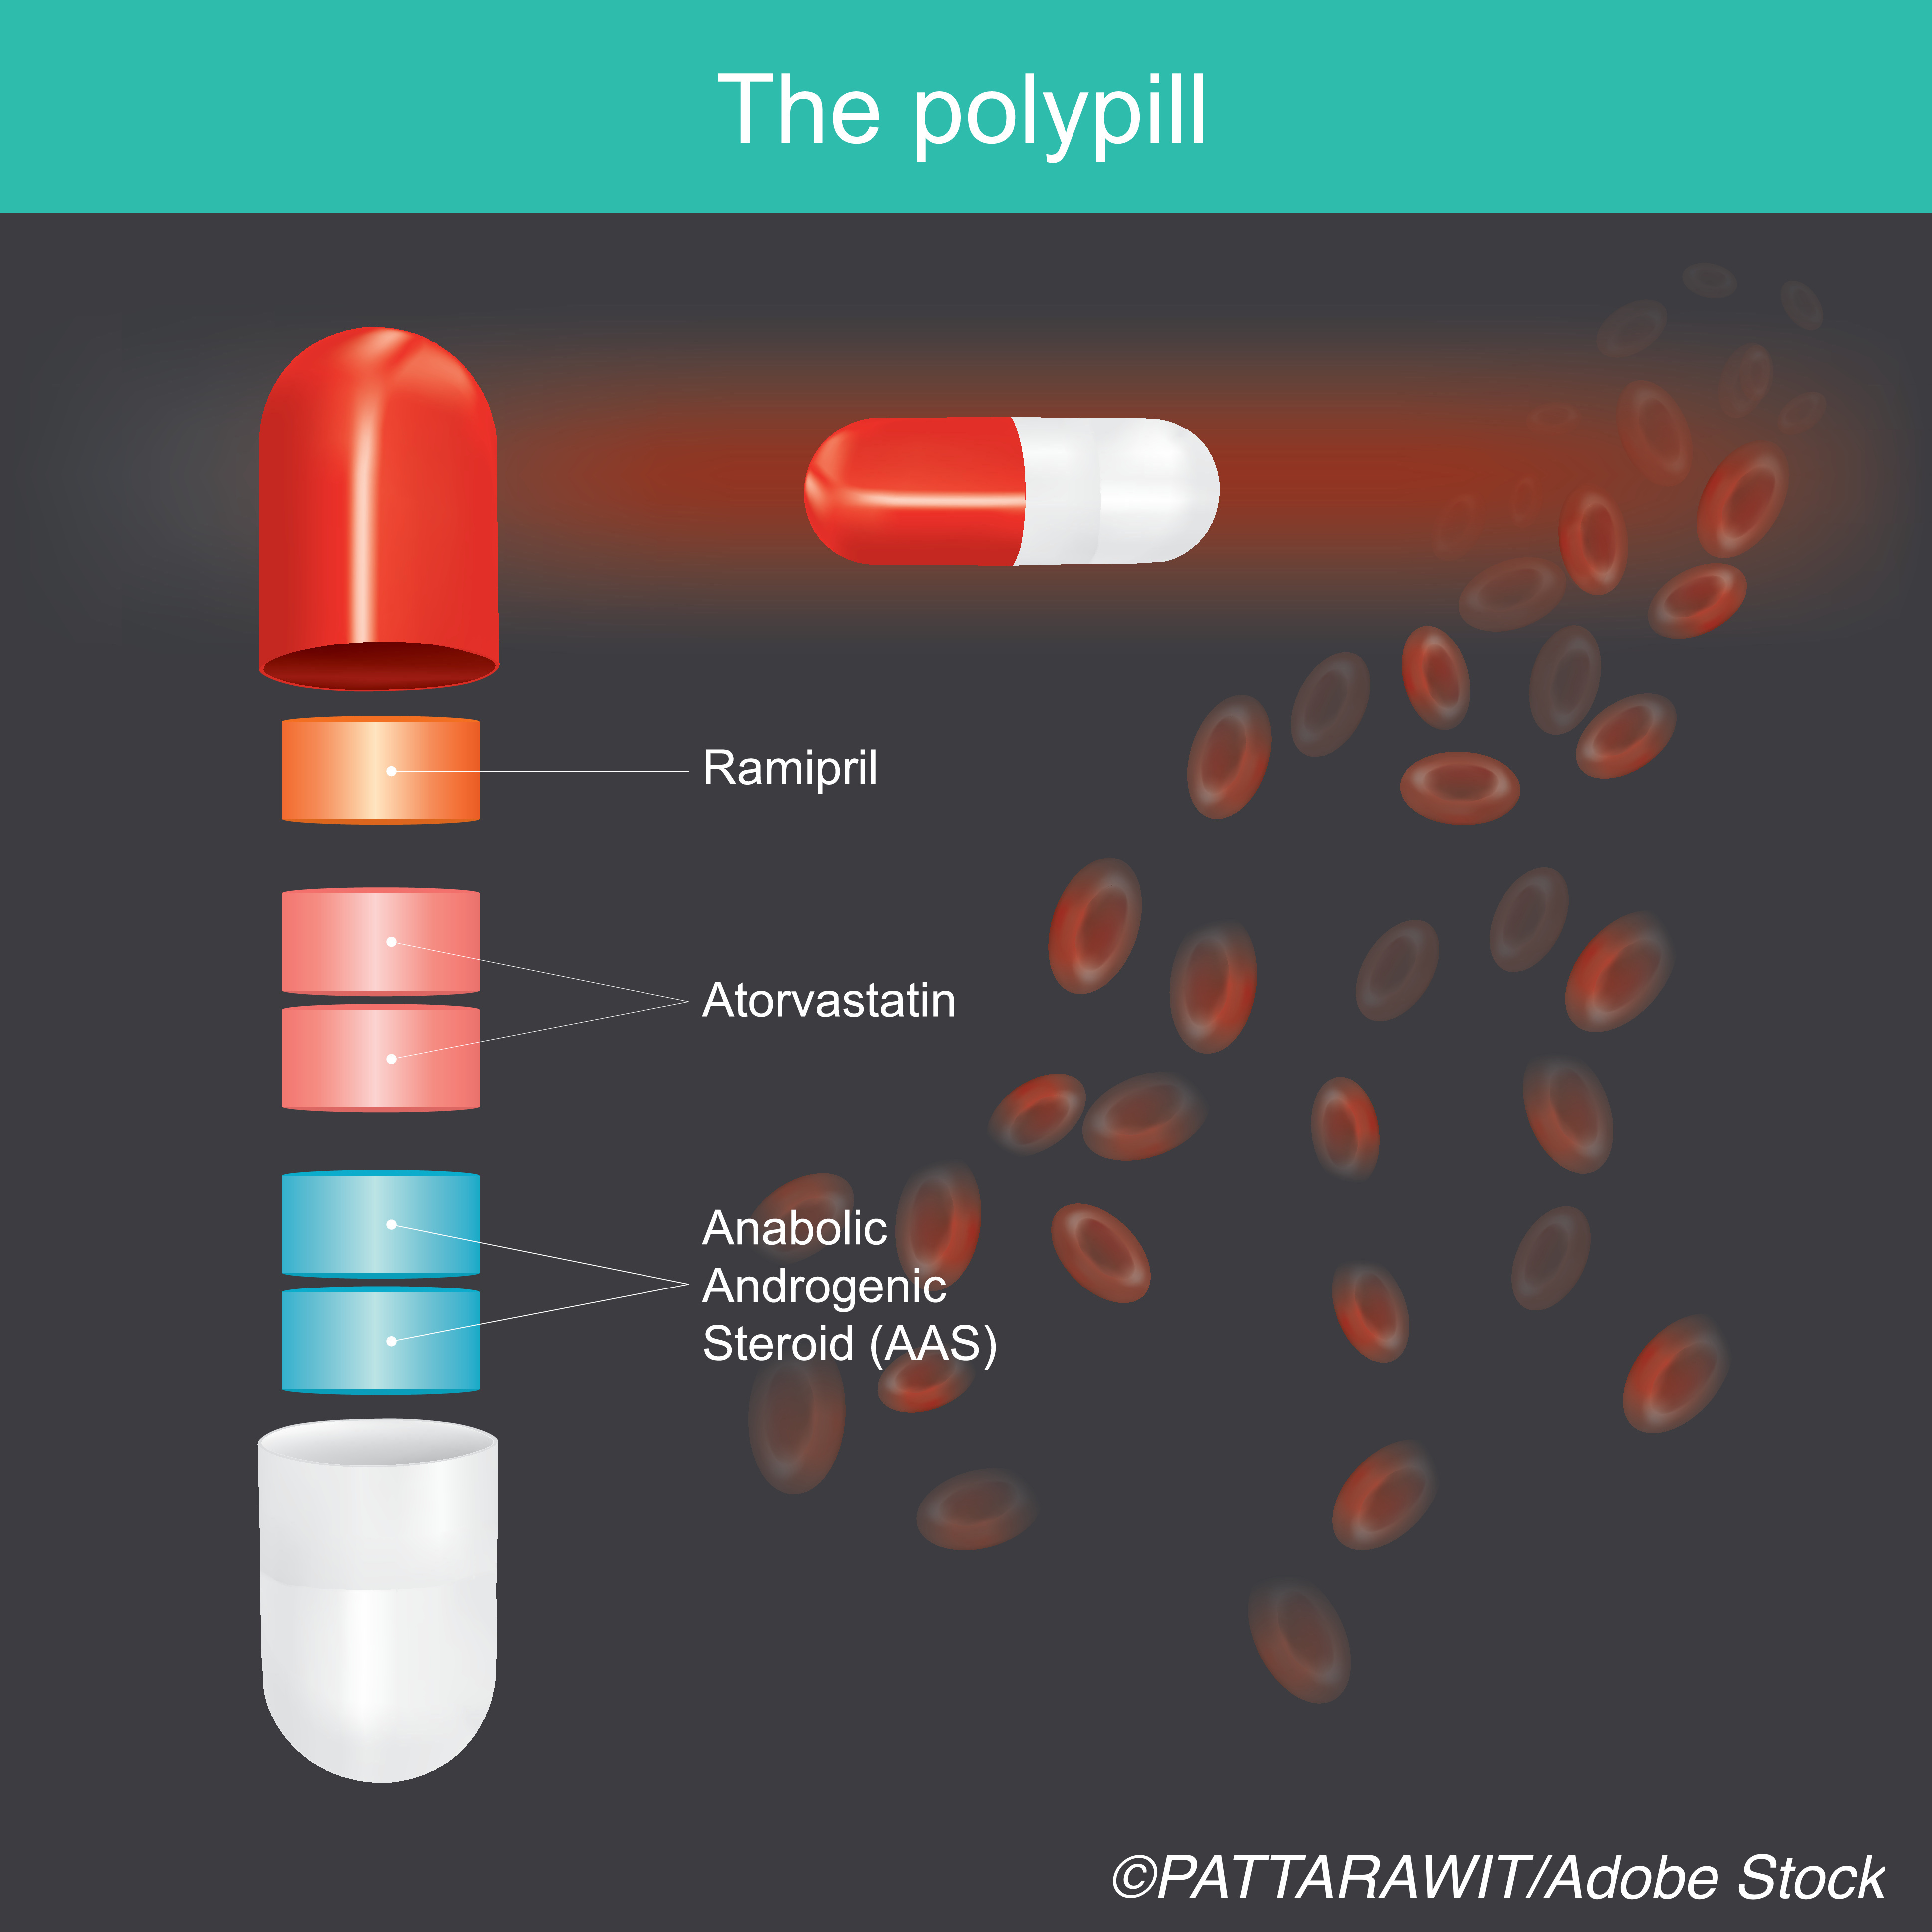 AHA: Polypill Plus Aspirin Improves Cardiovascular Outcomes